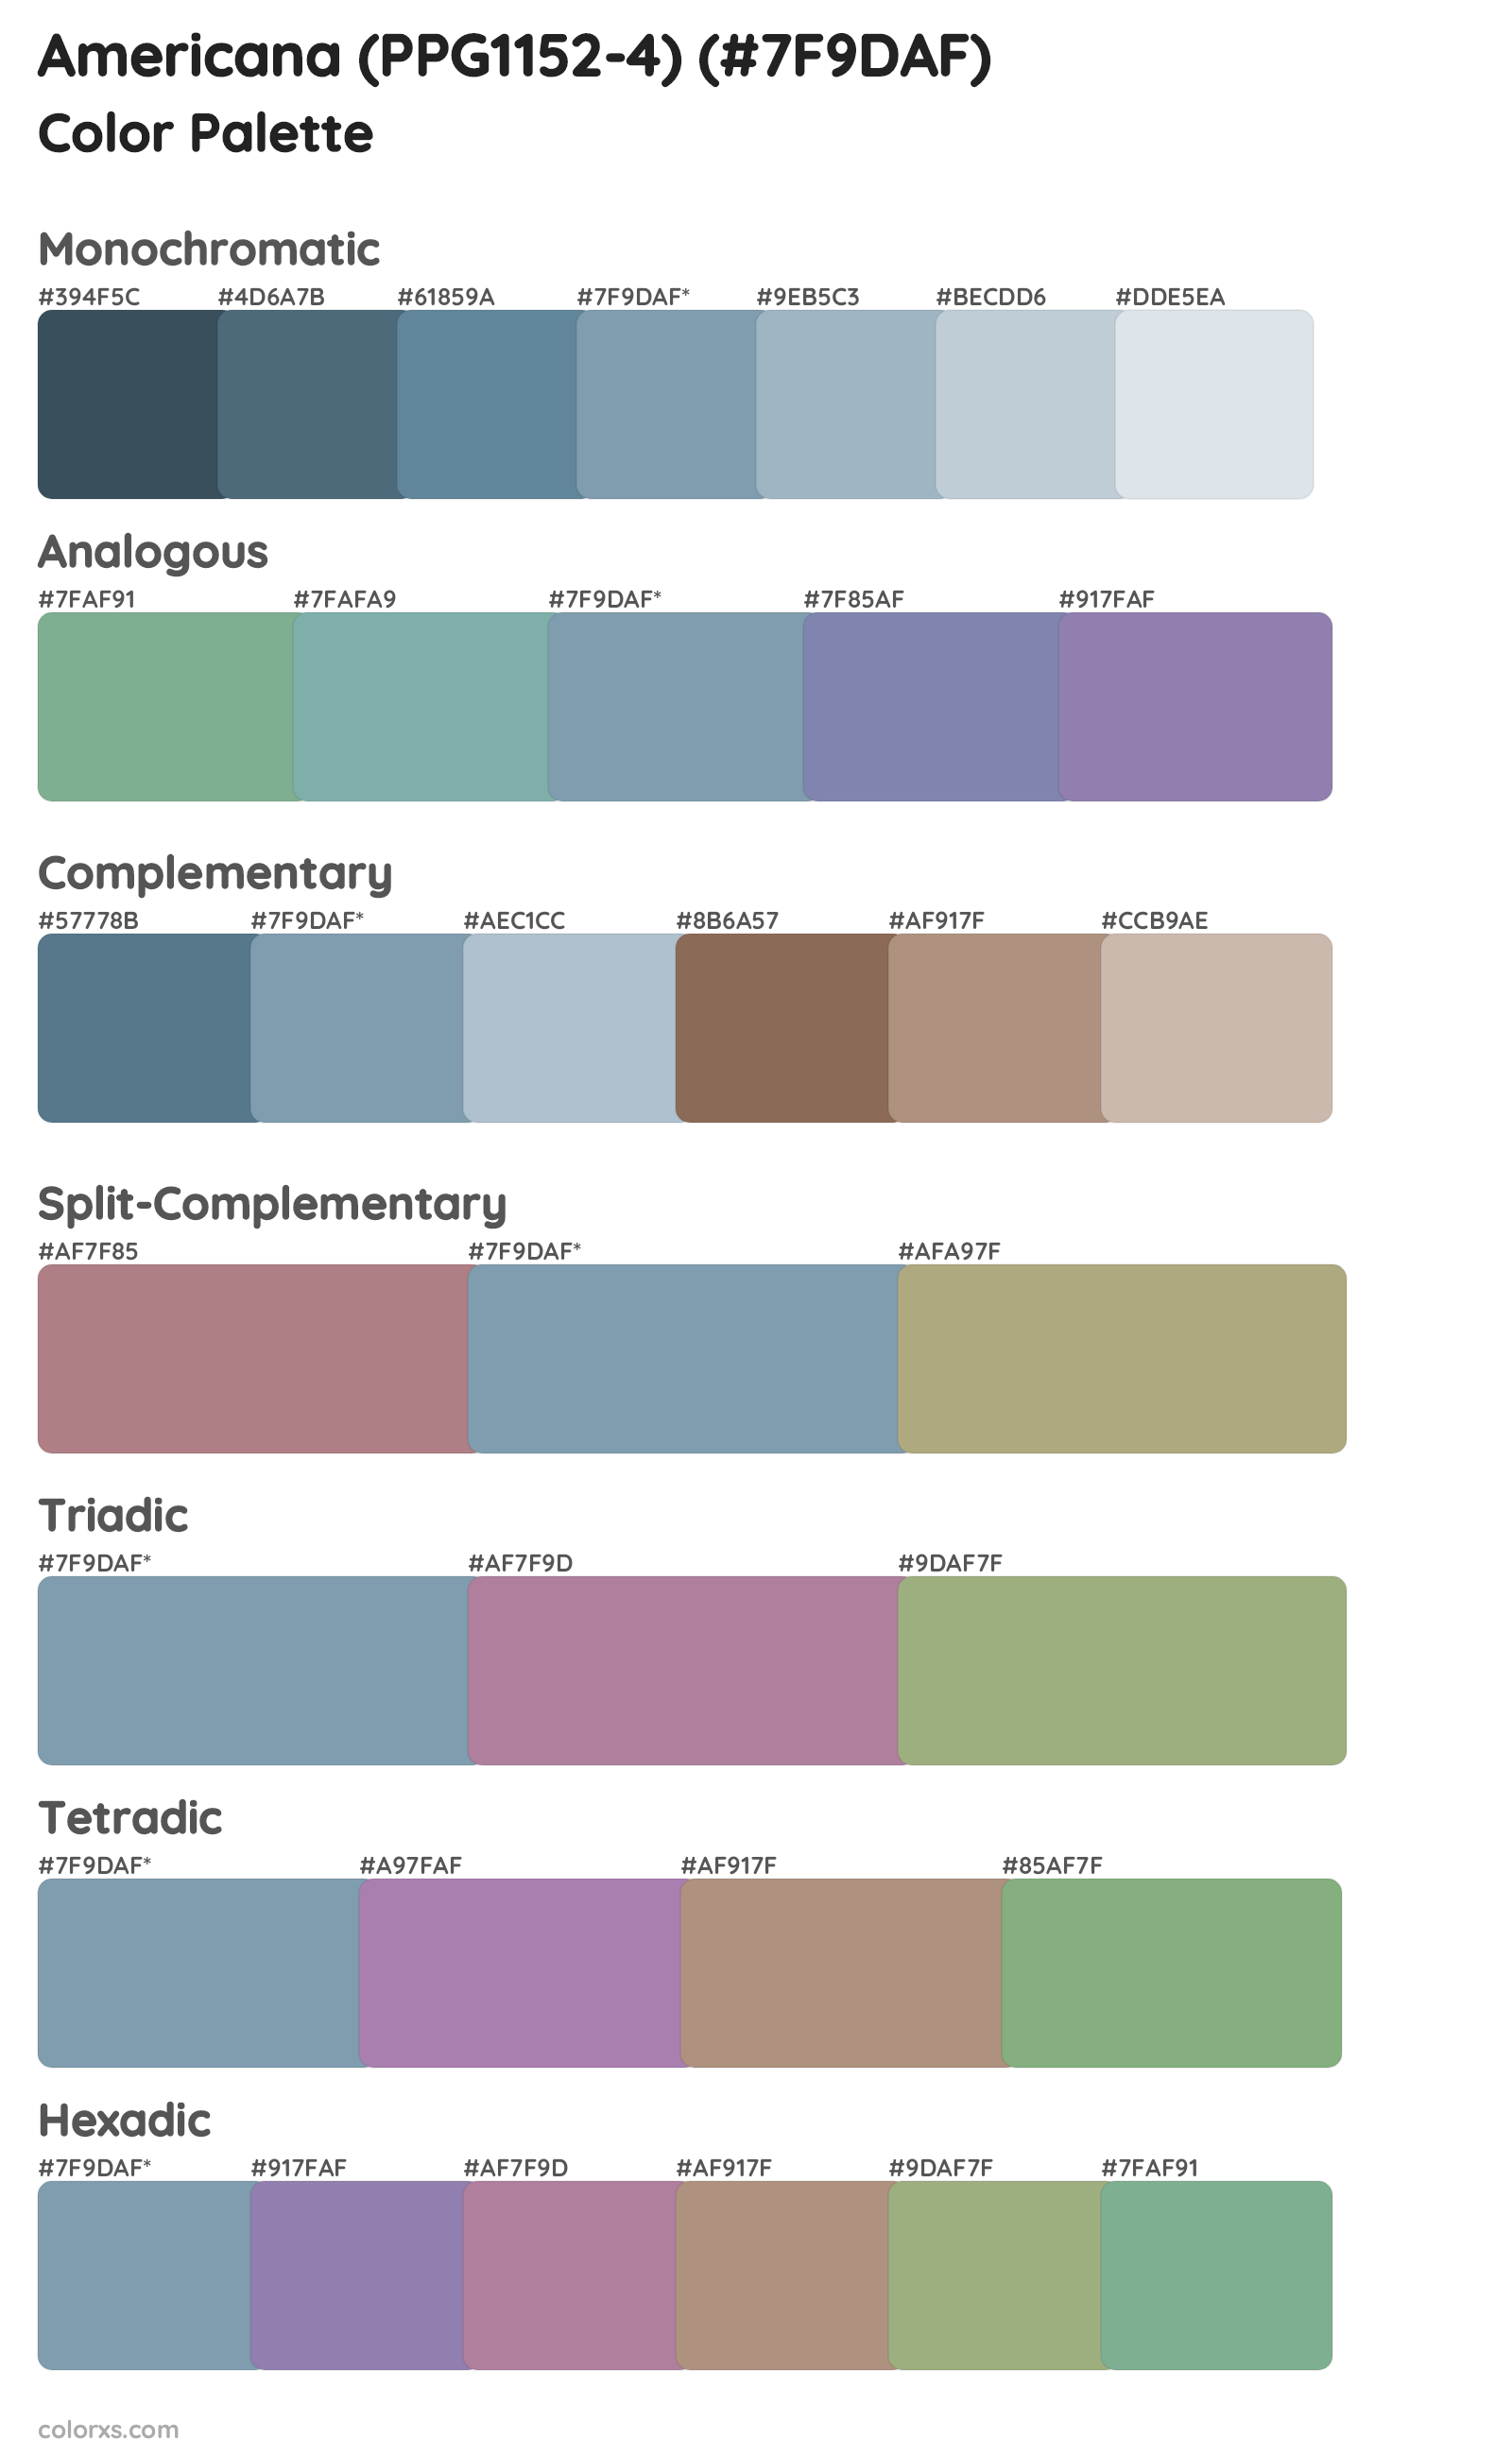 Americana (PPG1152-4) Color Scheme Palettes